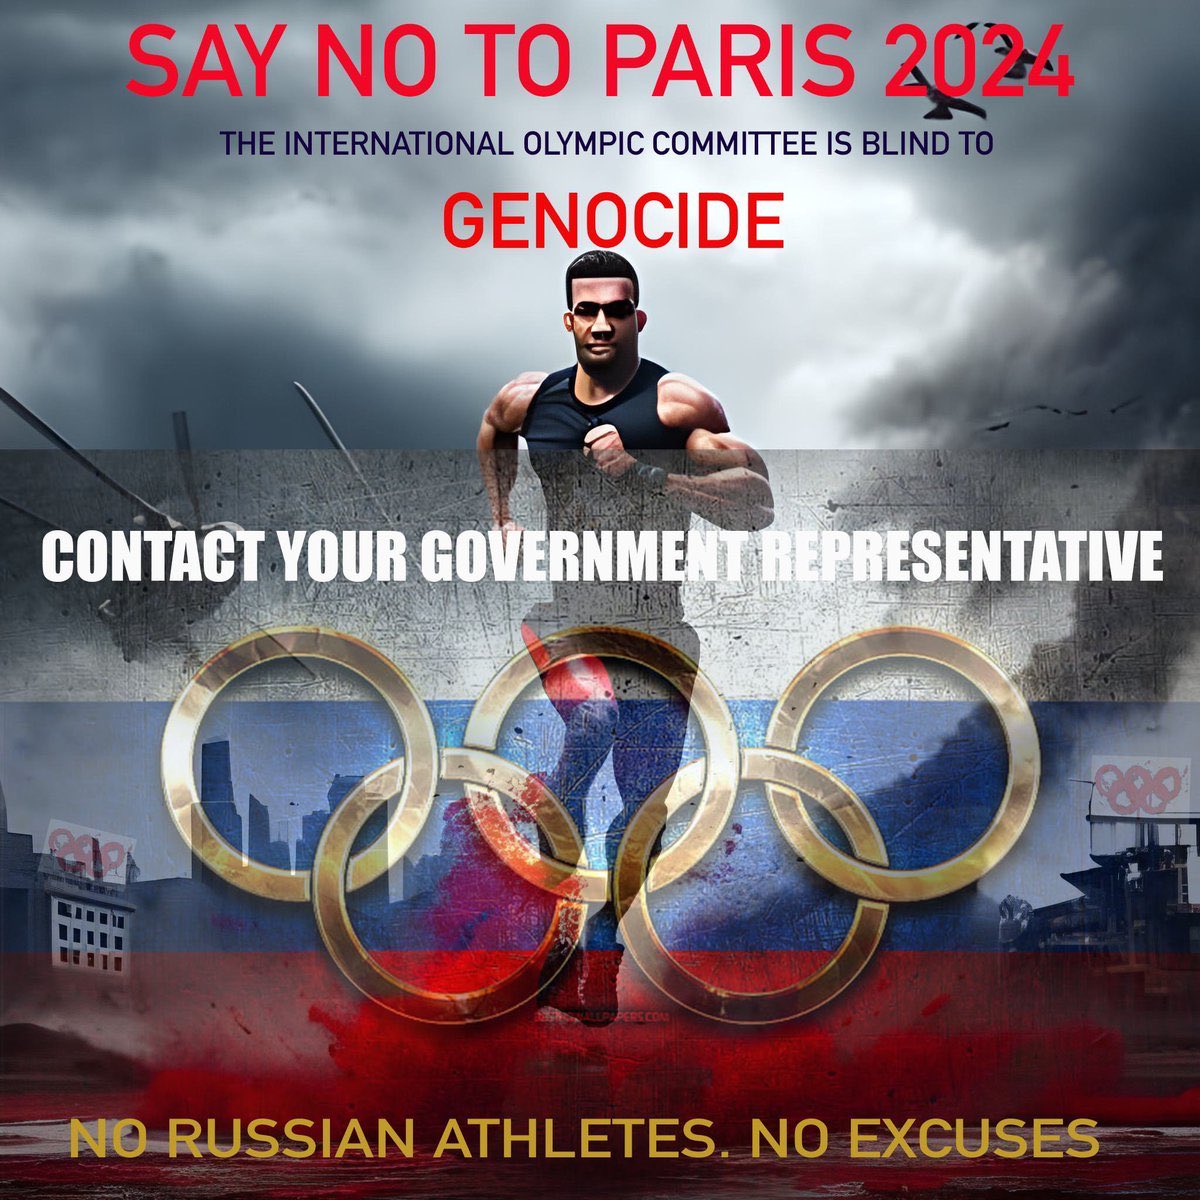 @UpsssOhJe #BoycottOlympics2024 #RussiaIsATerroristState